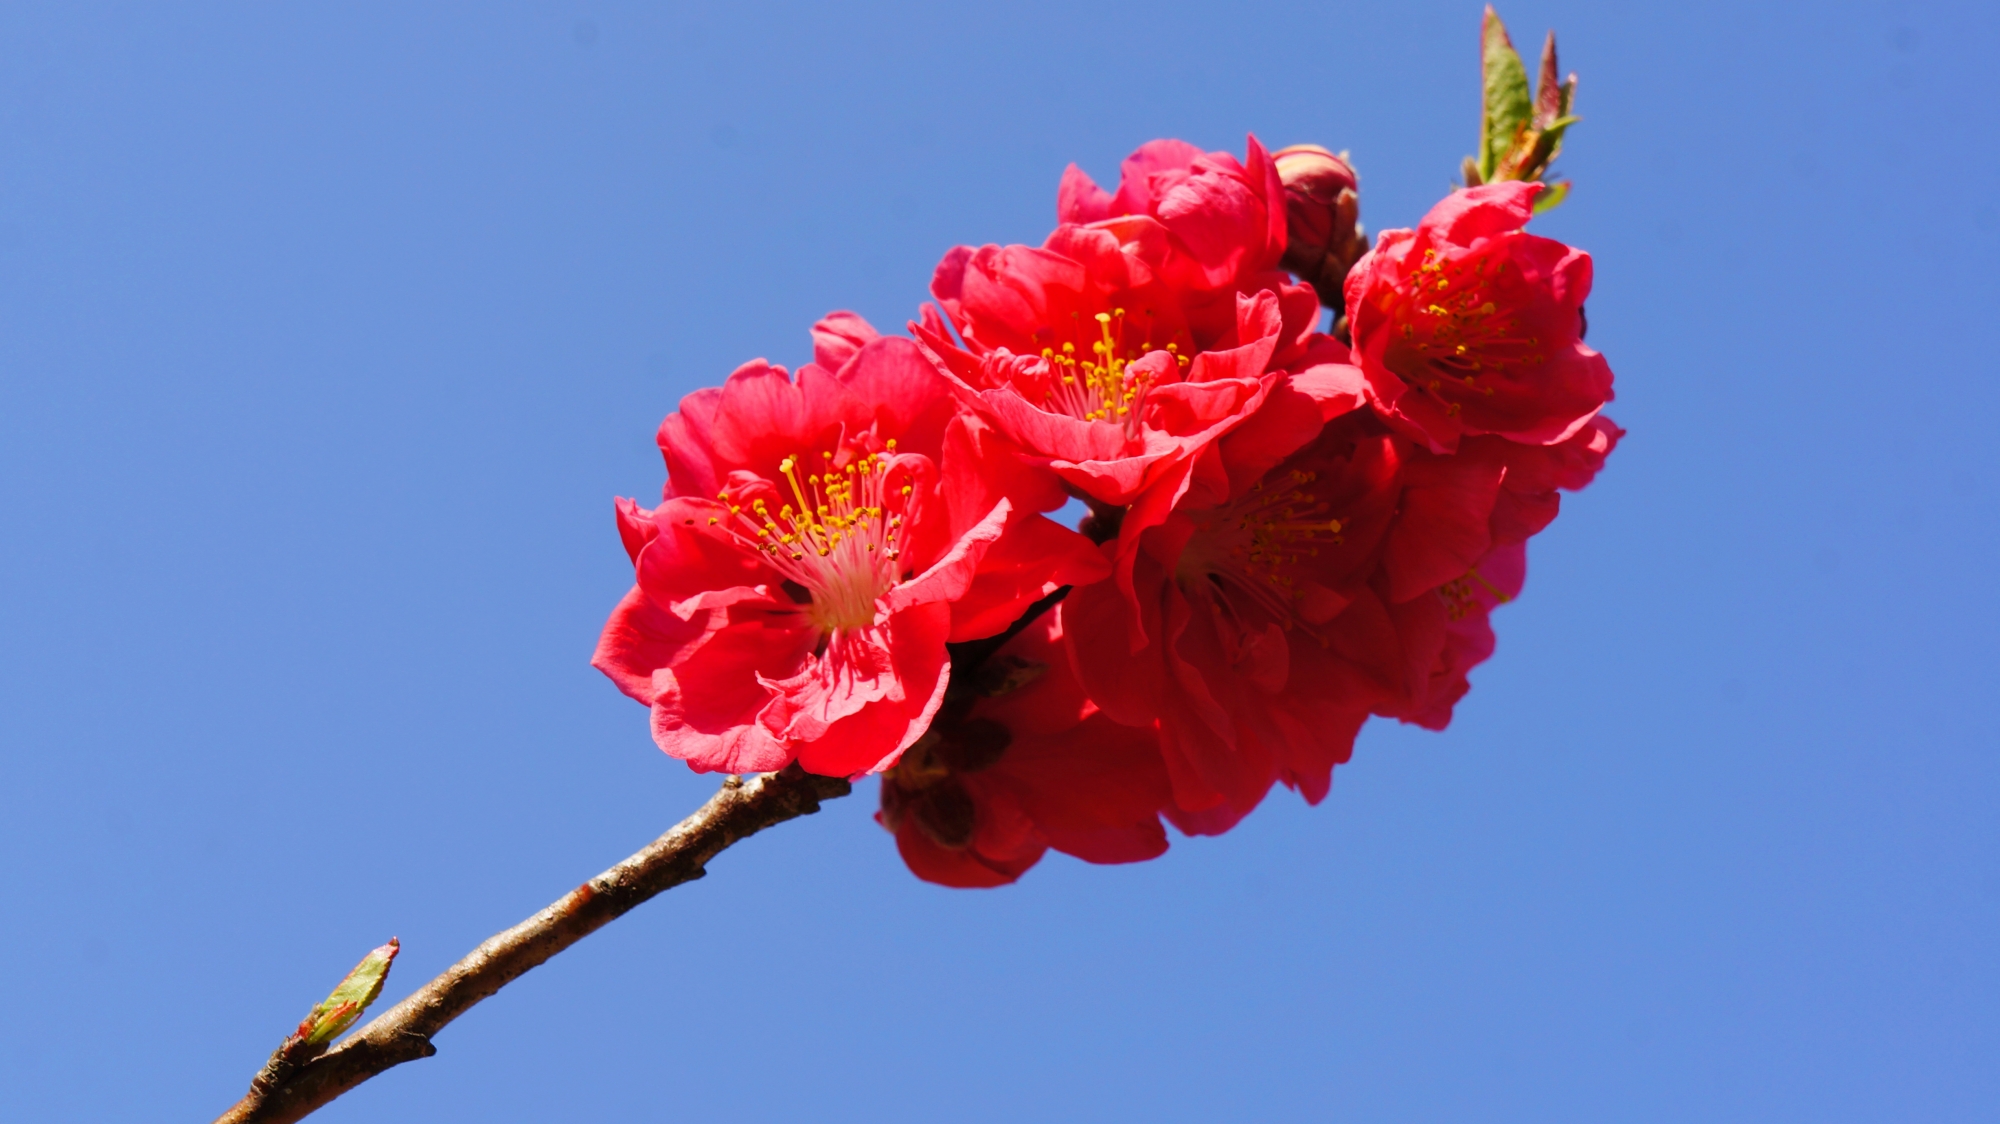 京都御苑の見事に咲き誇る赤い桃の花